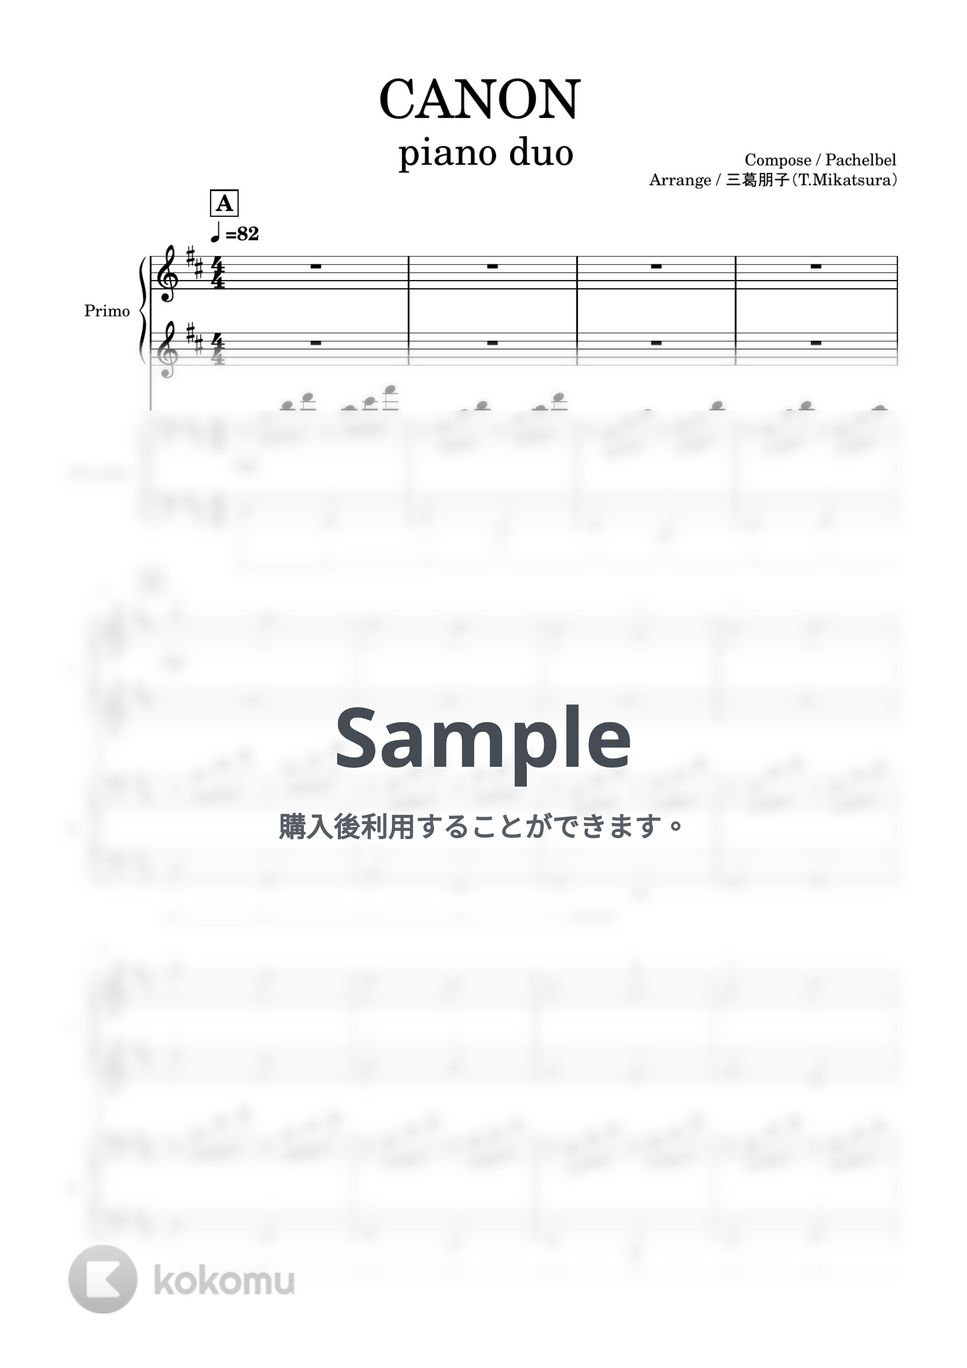 パッヘルベル - カノン (ピアノ連弾/中上級) by 三葛朋子（T.Mikatsura）